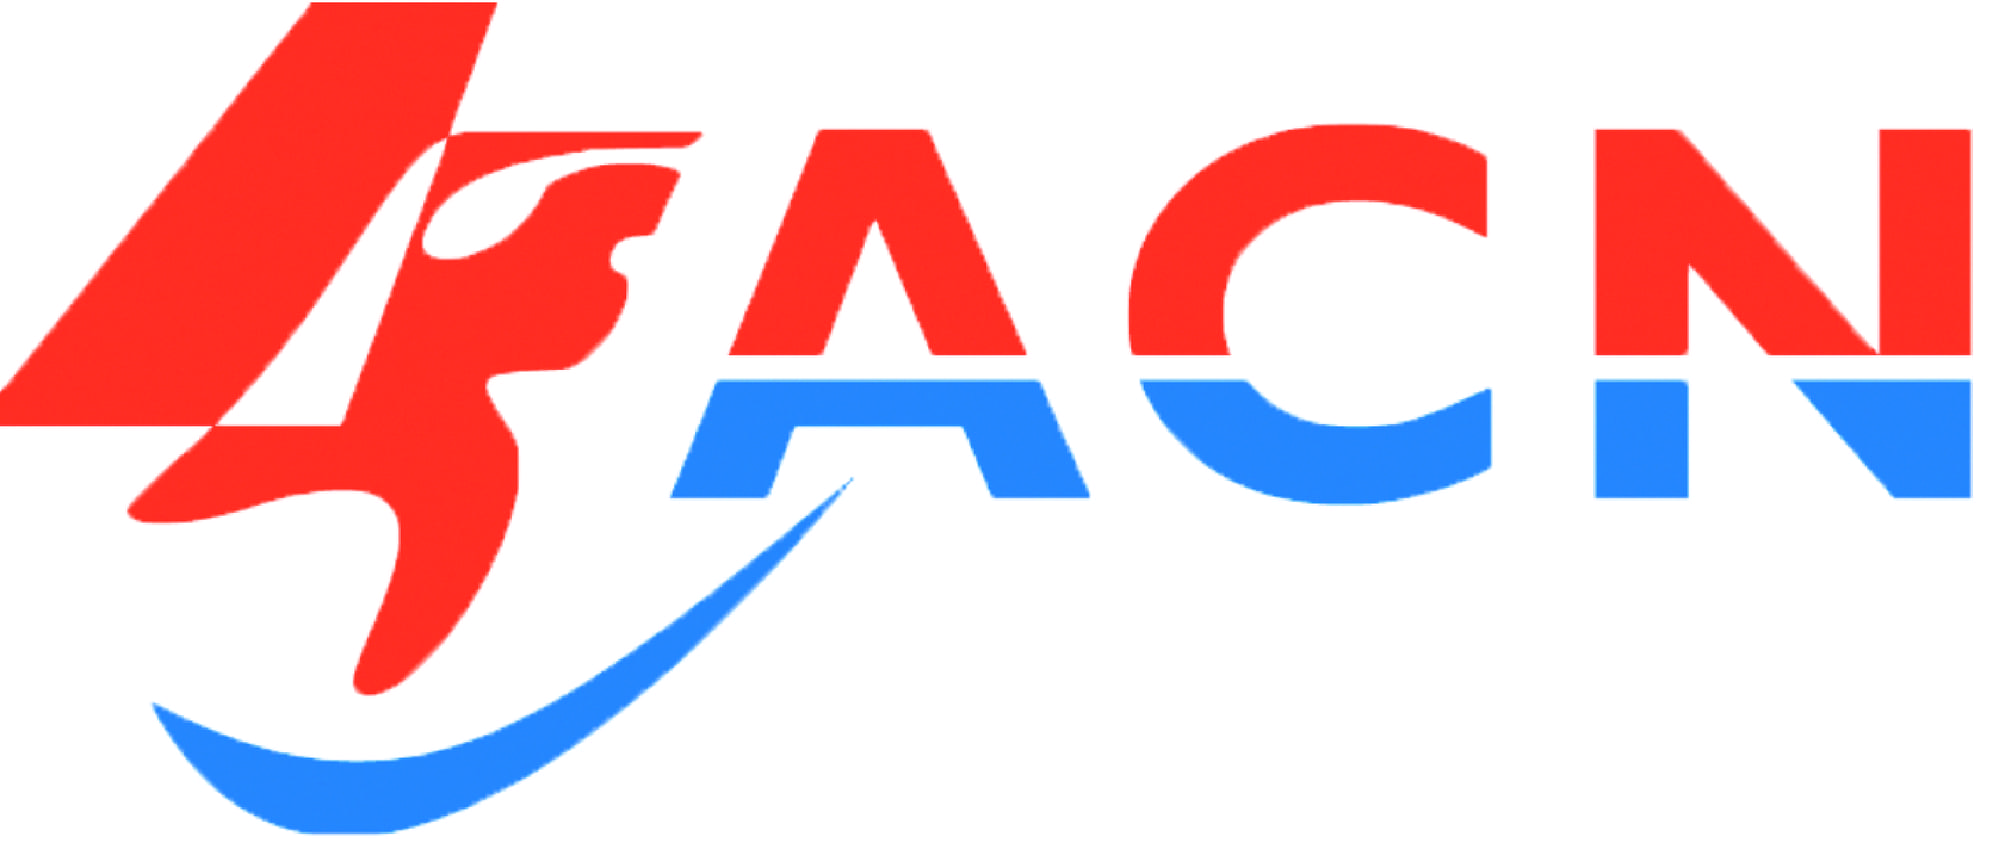 ACN logo